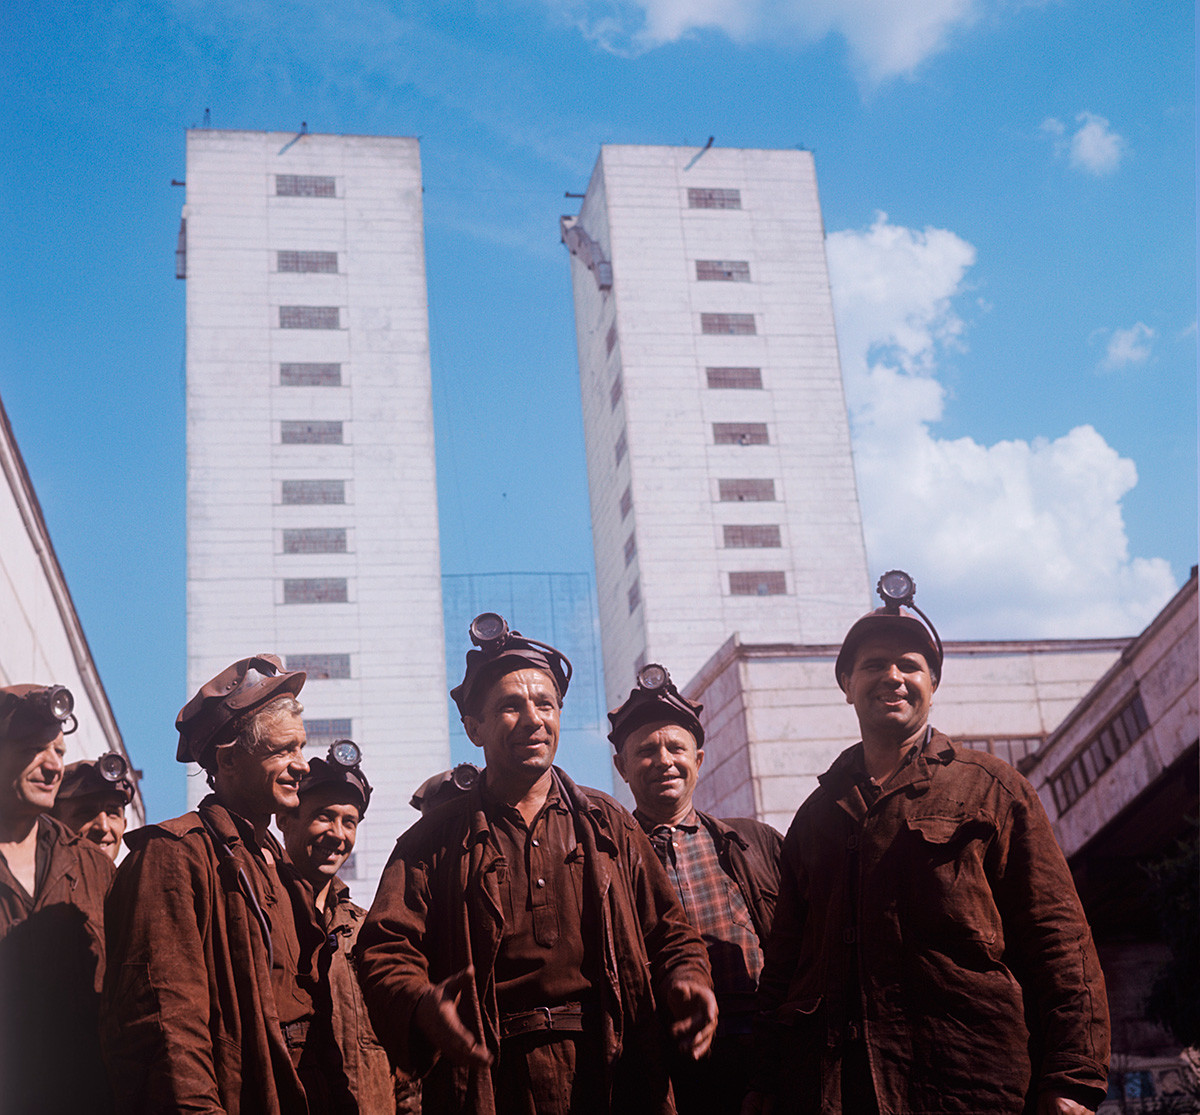 Екипа рудара Гардијског рудника у Кривом Рогу, 1970.